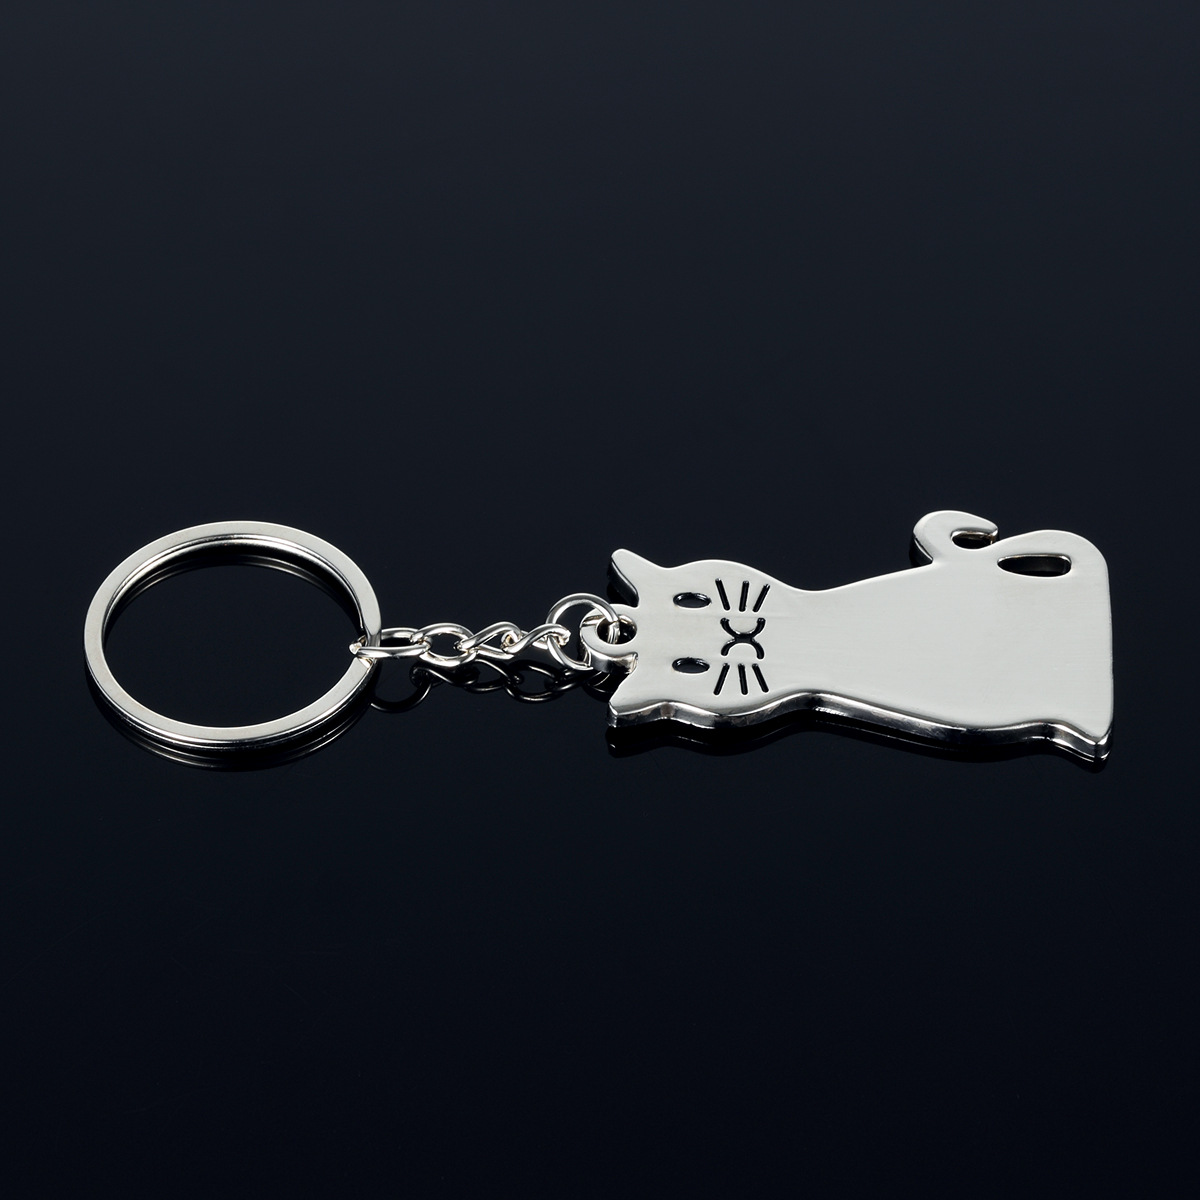 Nouveau modèle créatif de mode chat porte-clés porte-clés populaire porte-clés en métal cadeau dh811